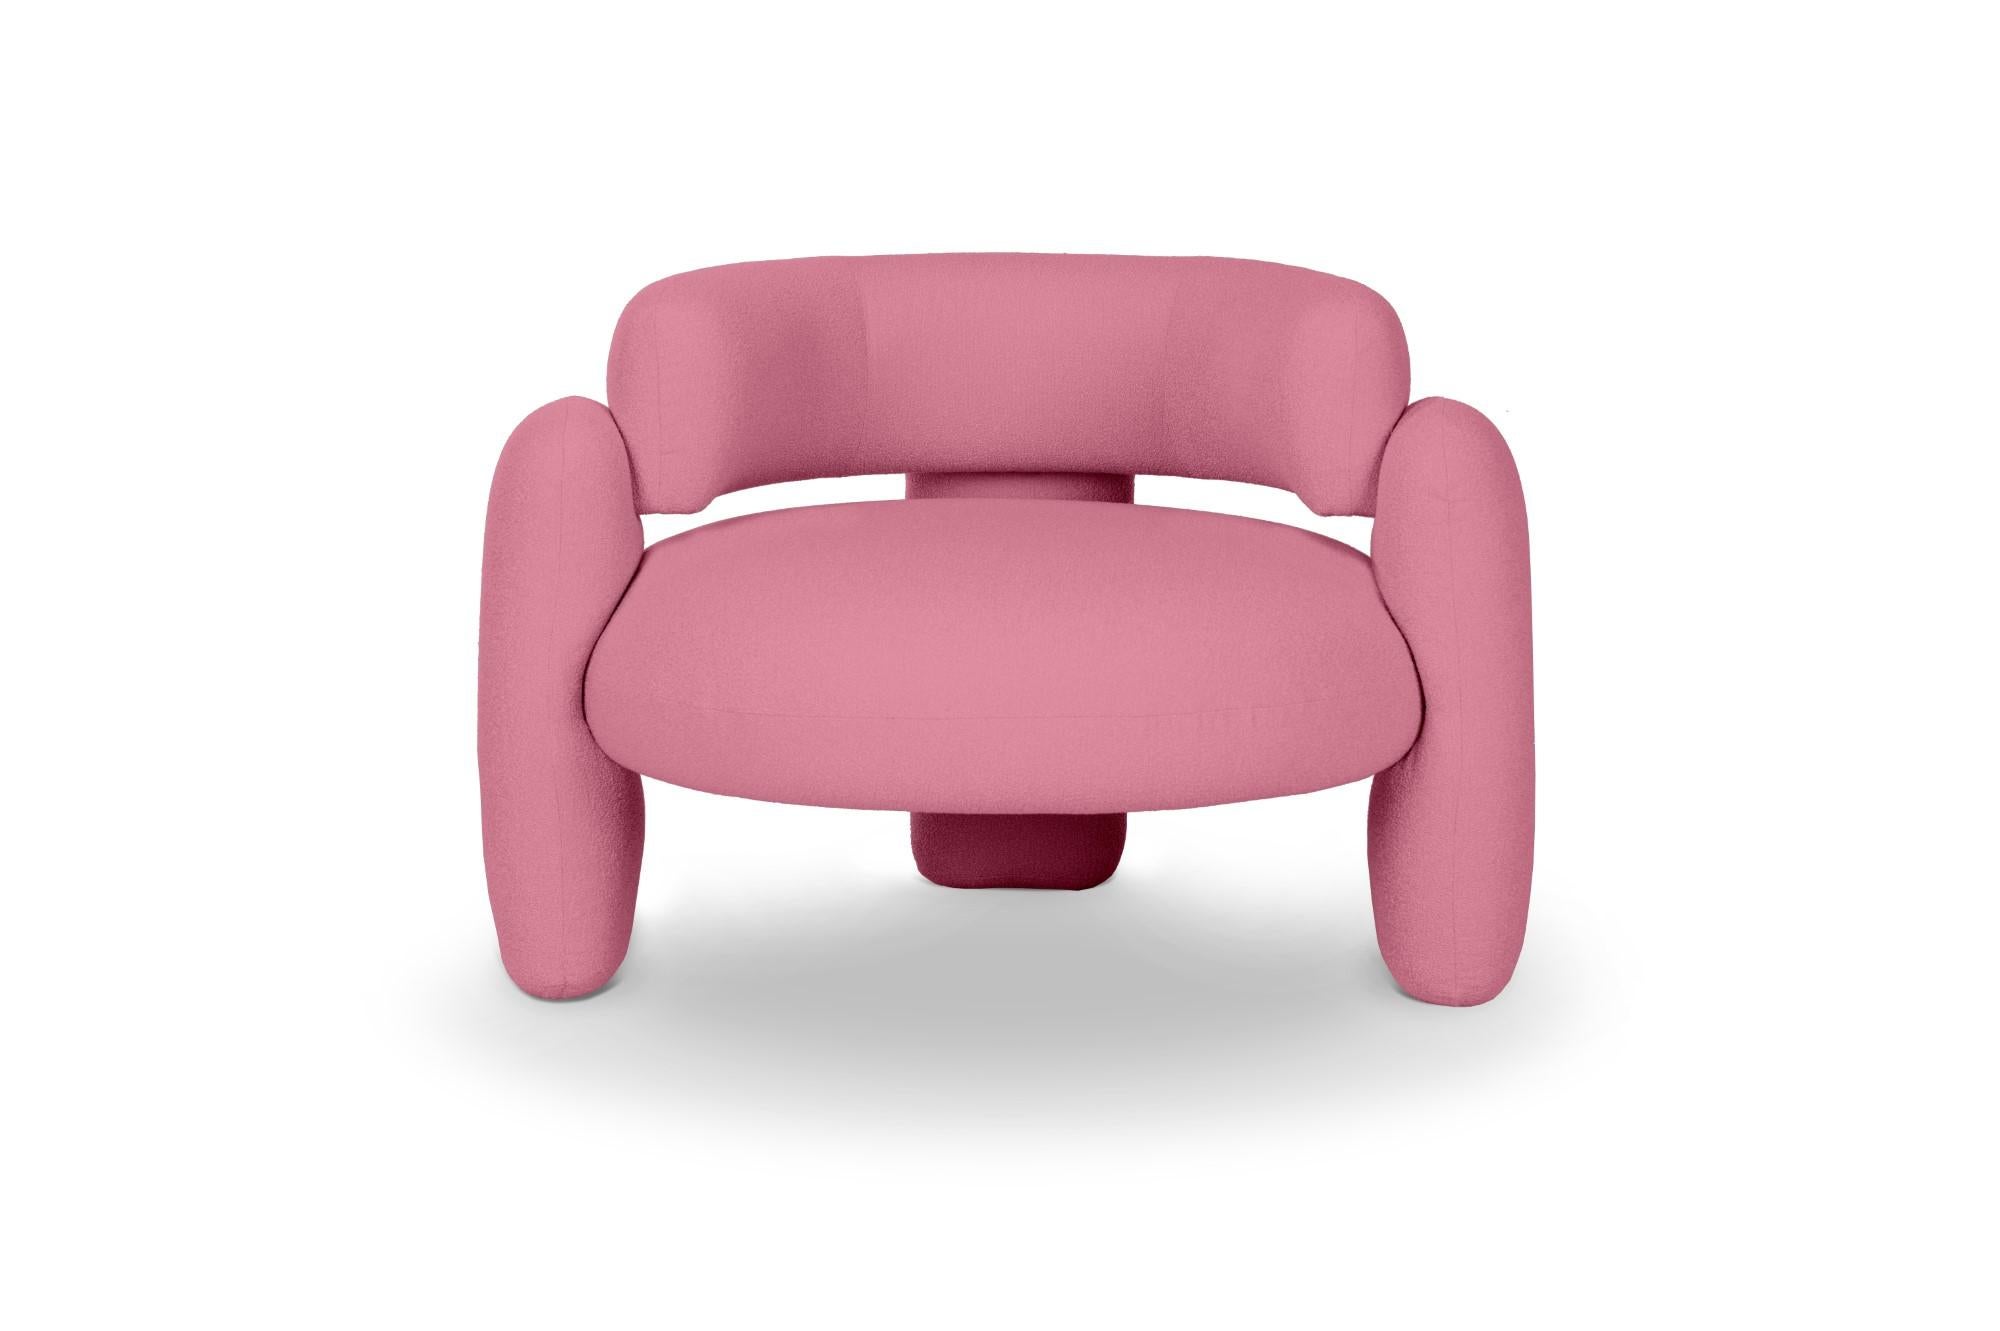 Embrace Lago Tamaris Sessel von Royal Stranger
Abmessungen: B 96 x T 85 x H 68 cm.
Es sind verschiedene Farben und Ausführungen der Polsterung erhältlich. Bitte kontaktieren Sie uns.
MATERIALIEN: Polstermöbel.

Der Embrace Armchair ist eine